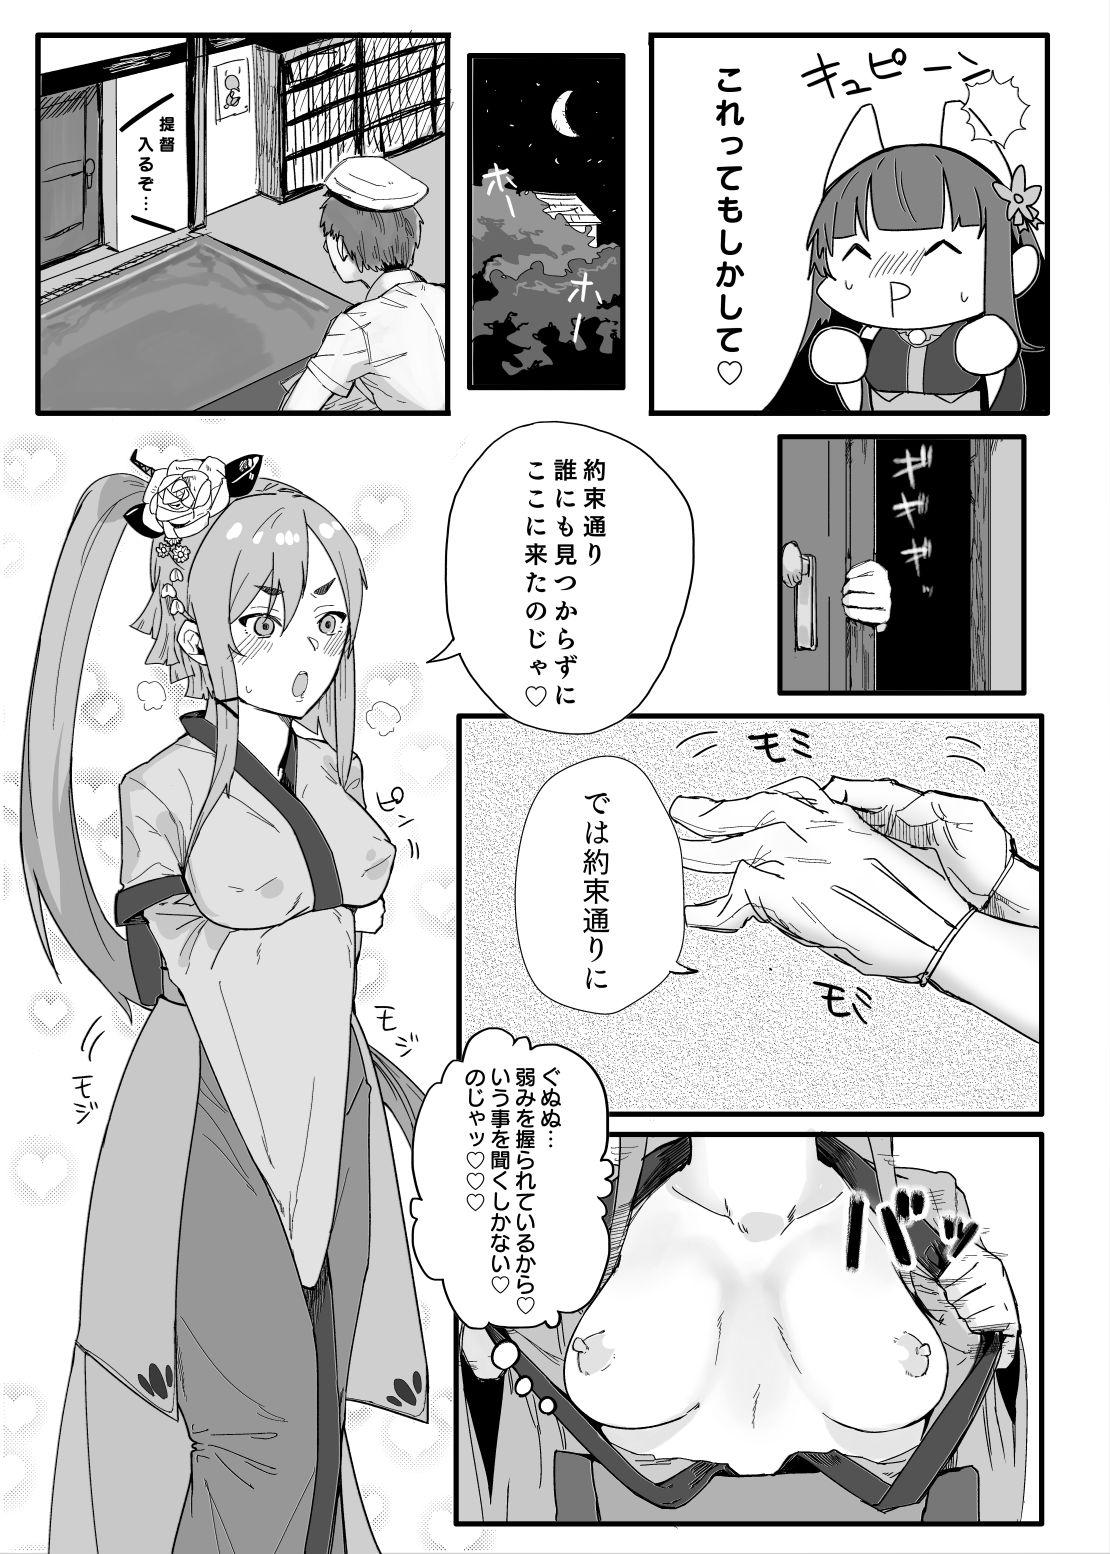 Fitness Akagi-san wa Sore o Gaman dekinai - Warship girls Spycam - Page 7